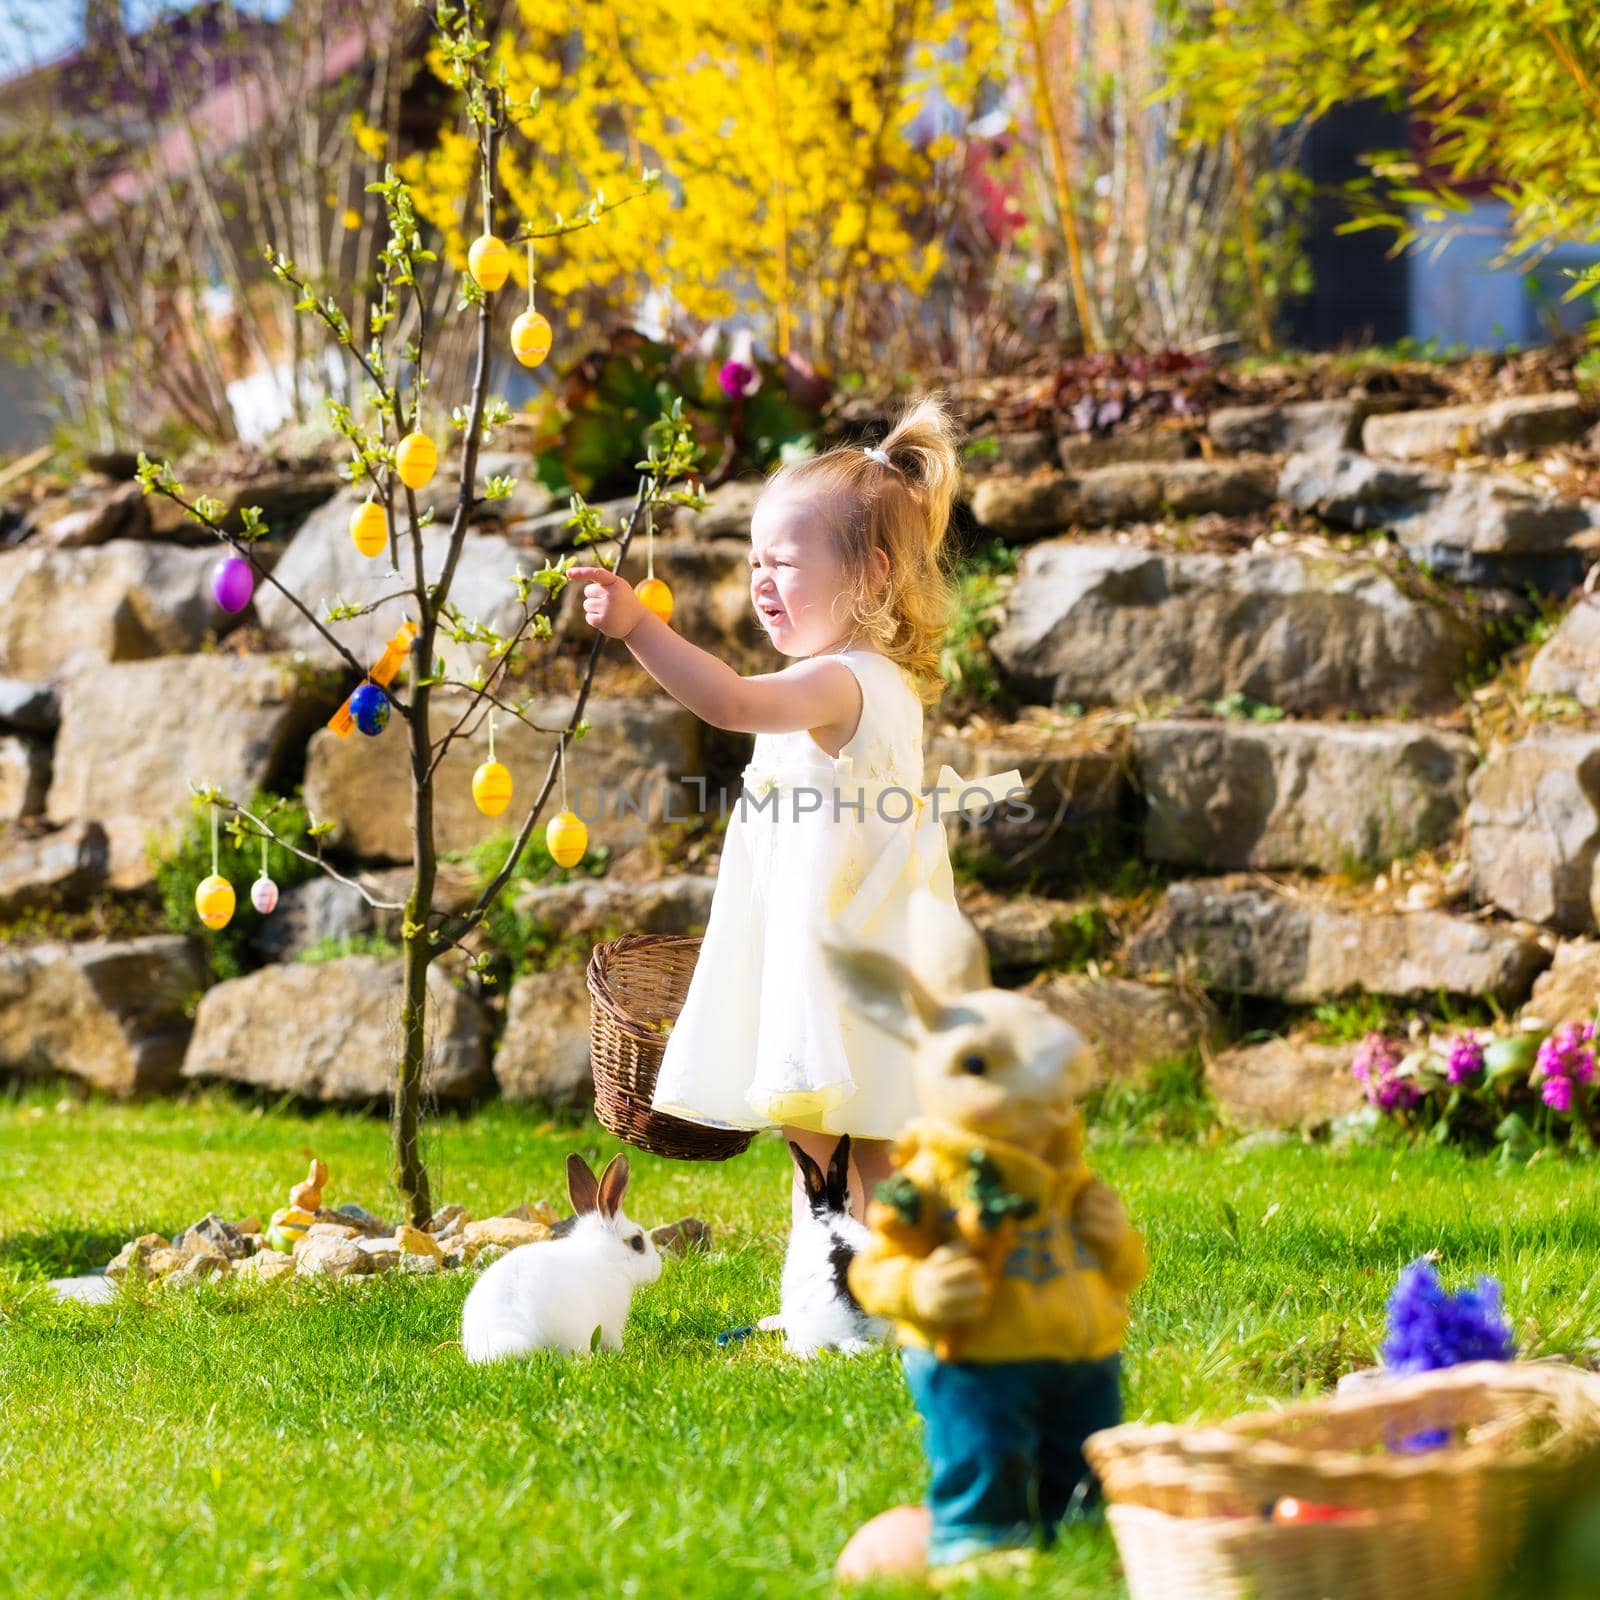 Girl on Easter egg hunt with eggs by Kzenon